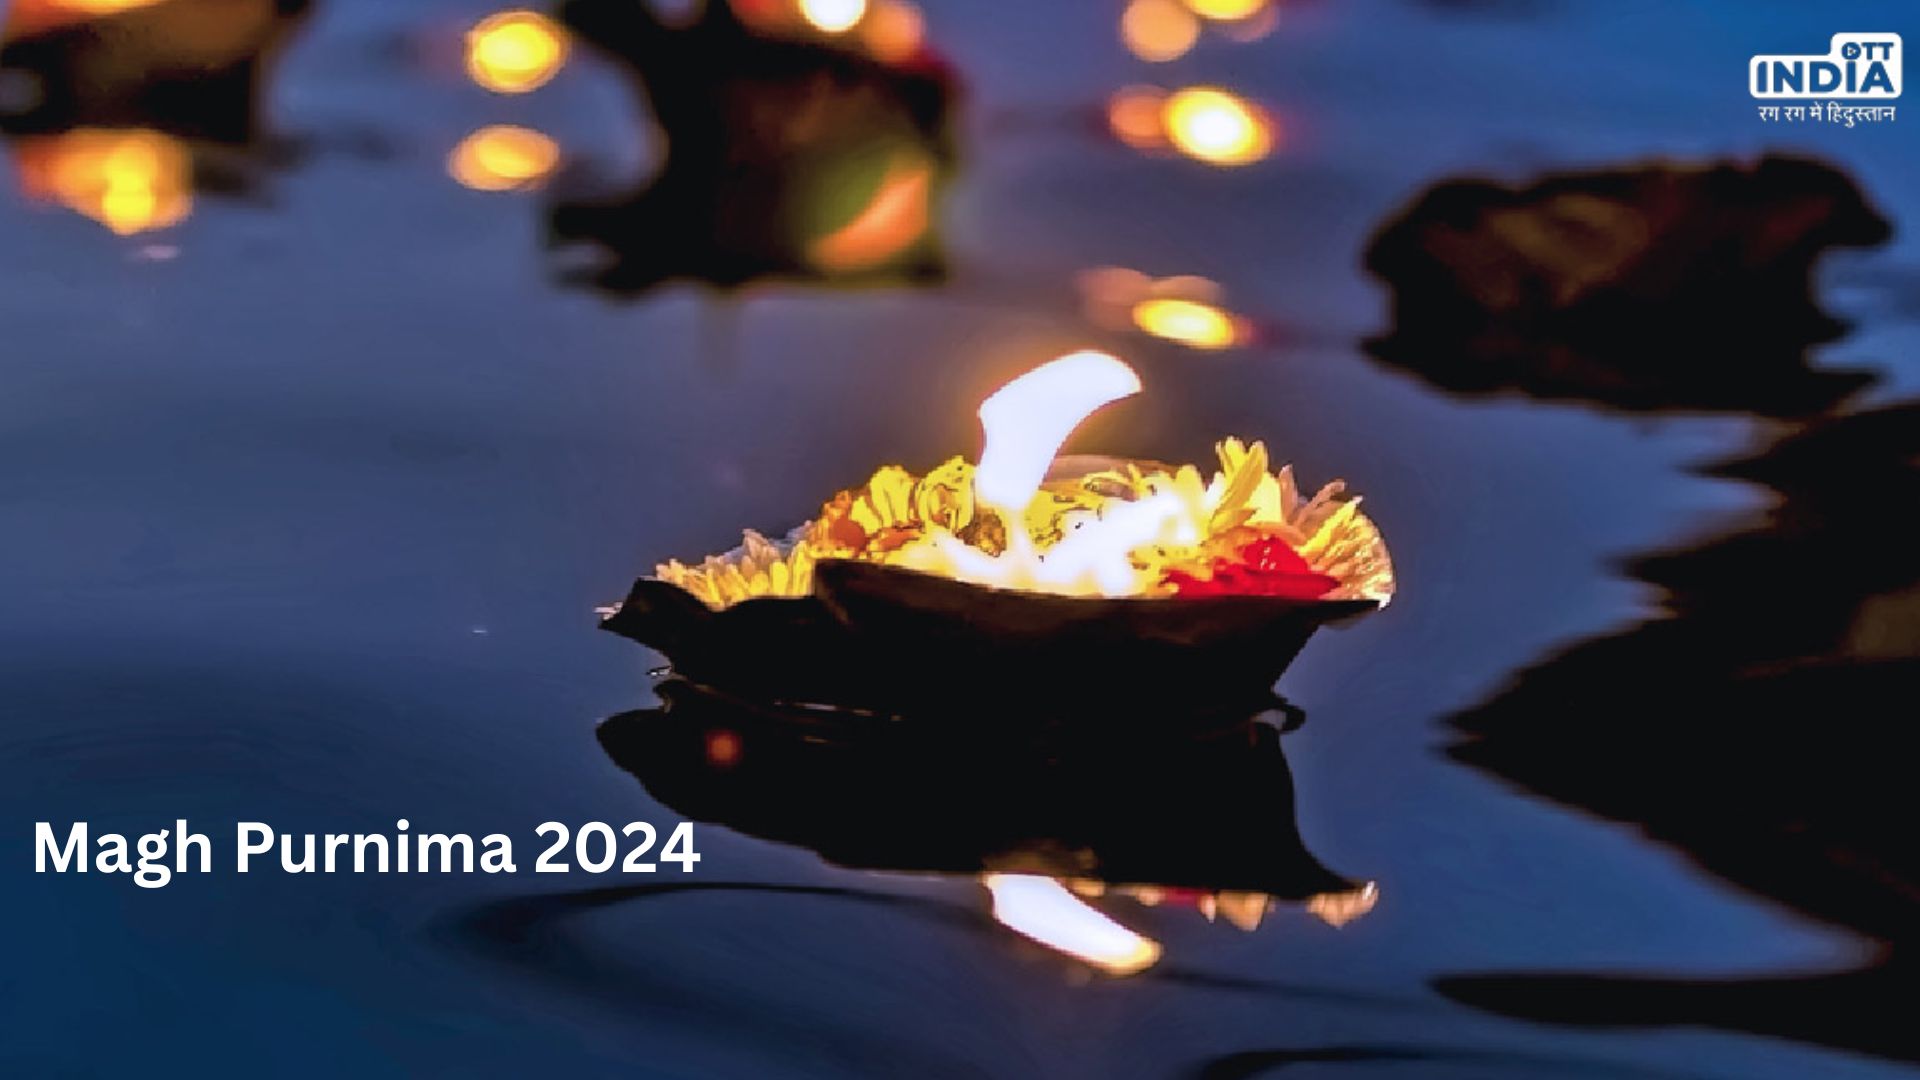 Magh Purnima 2024: पूर्णिमा के दिन करें ये 6 अचूक उपाय, खुल जाएगी बंद किस्मत